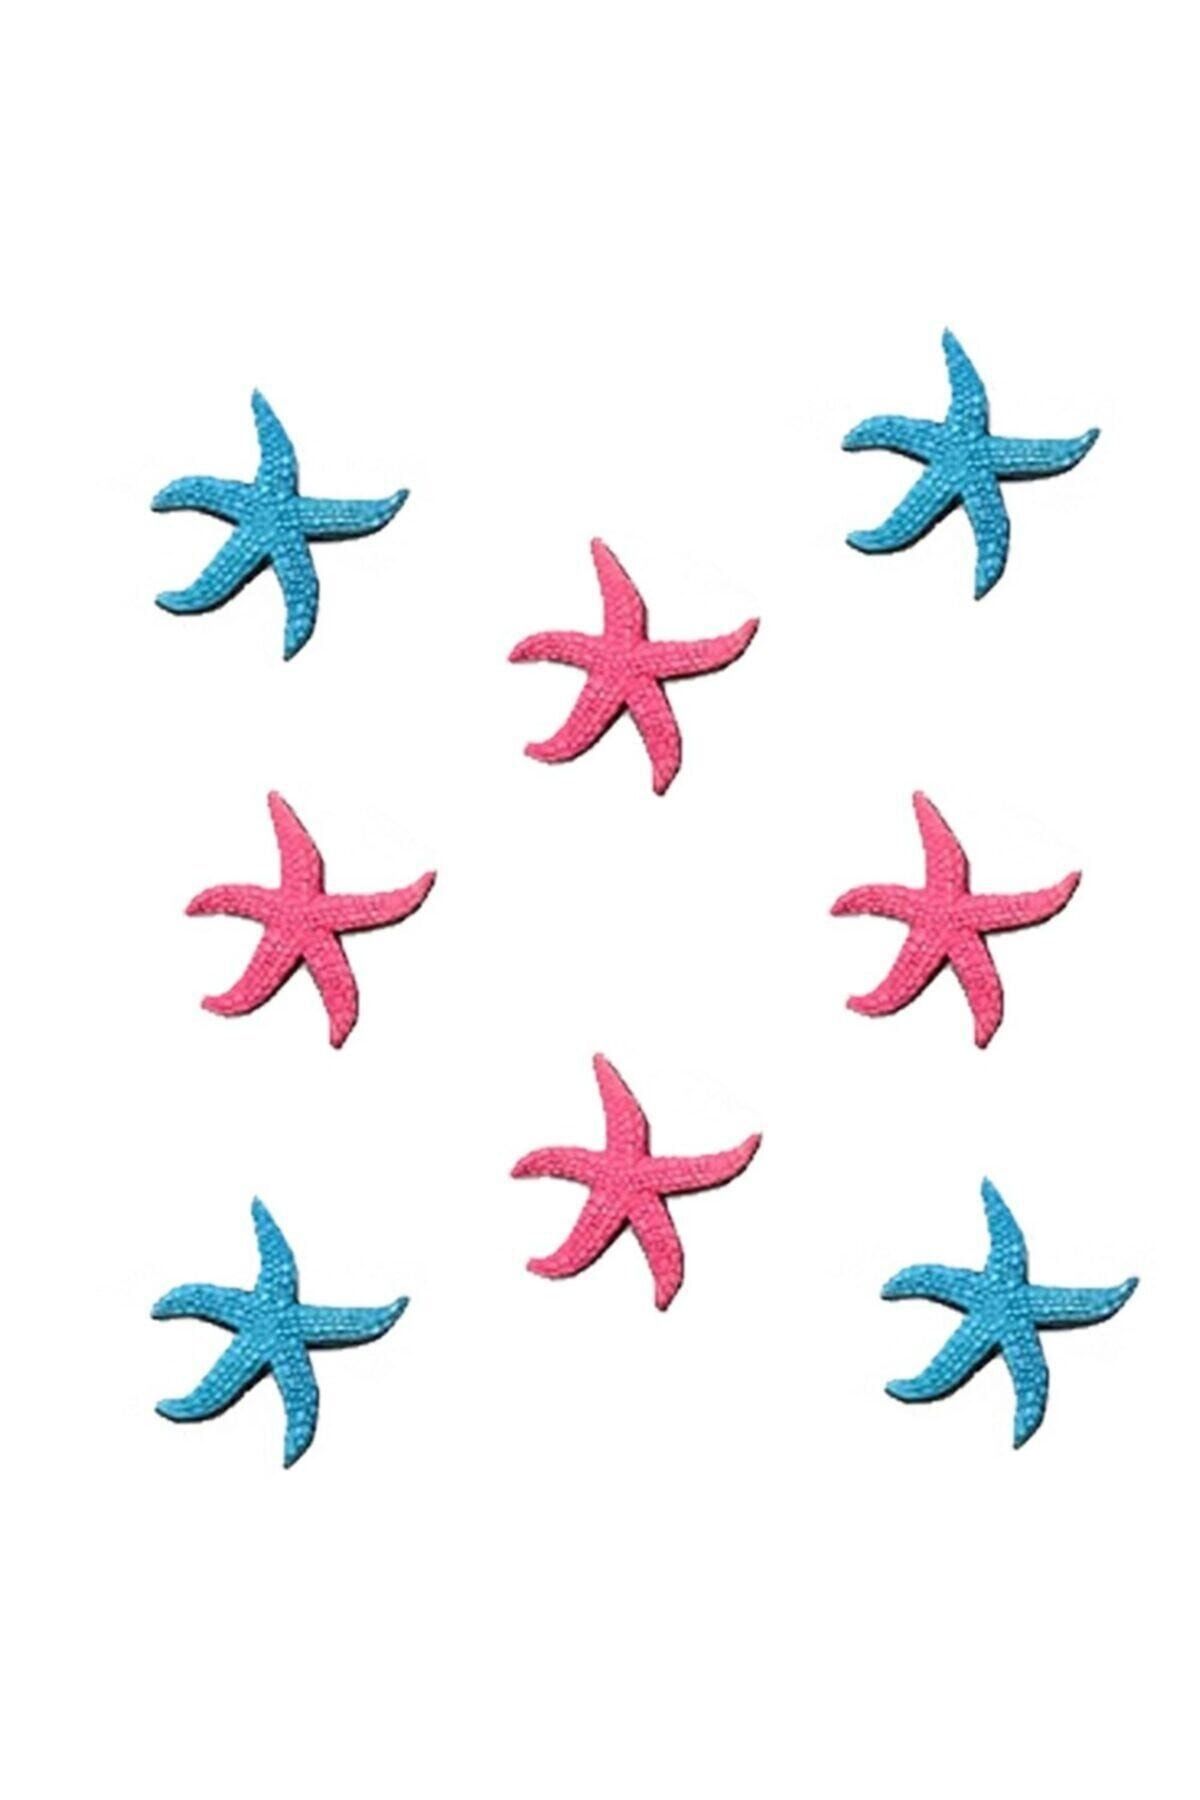 Genel Markalar Mini Deniz Yıldızı 8 Adet, Dekoratif Mini Duvar Süsü Pembe-mavi